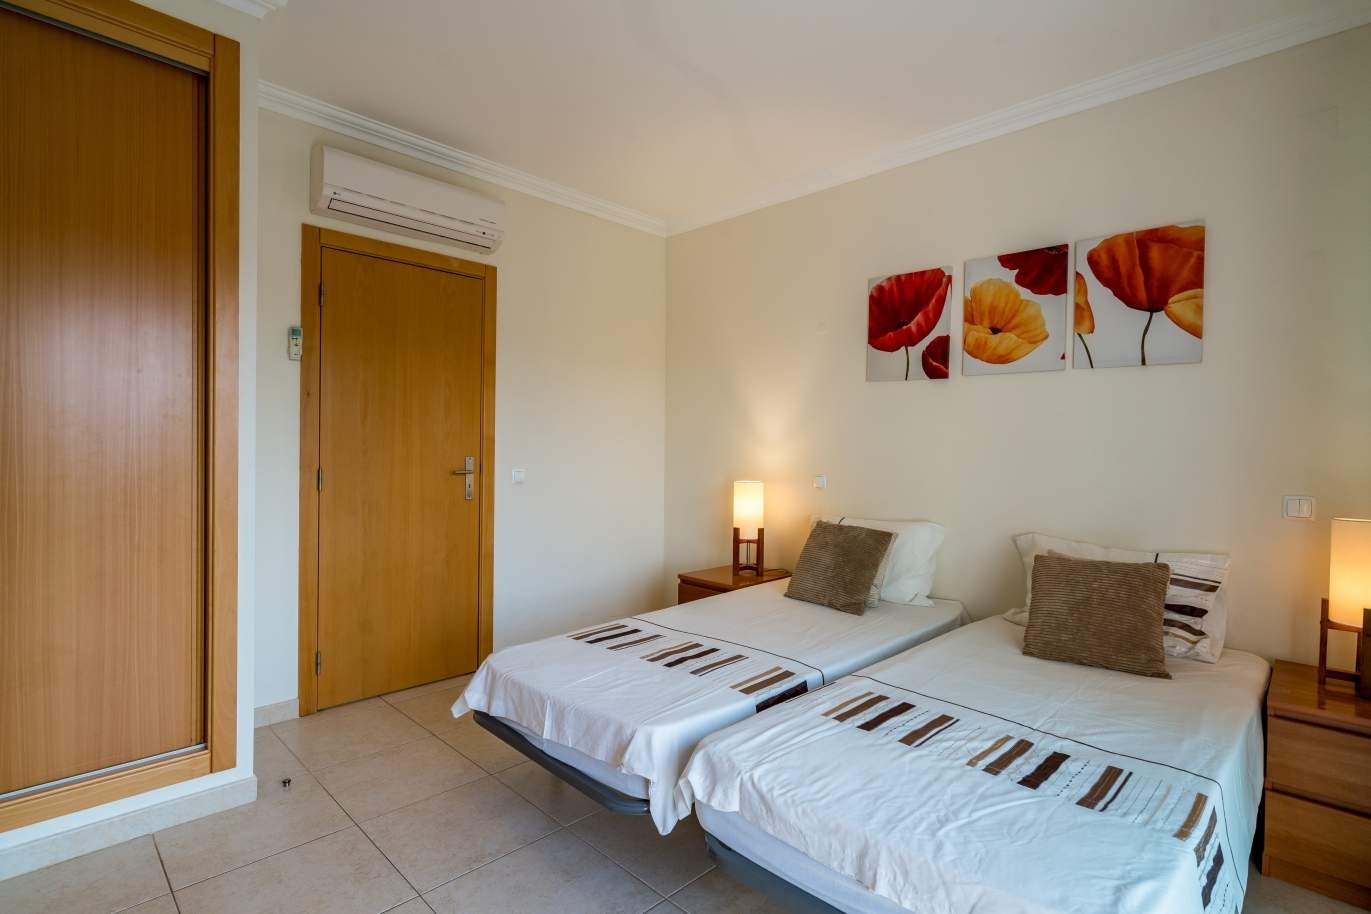 Sale of villa in private condominium in Albufeira, Algarve, Portugal_126890